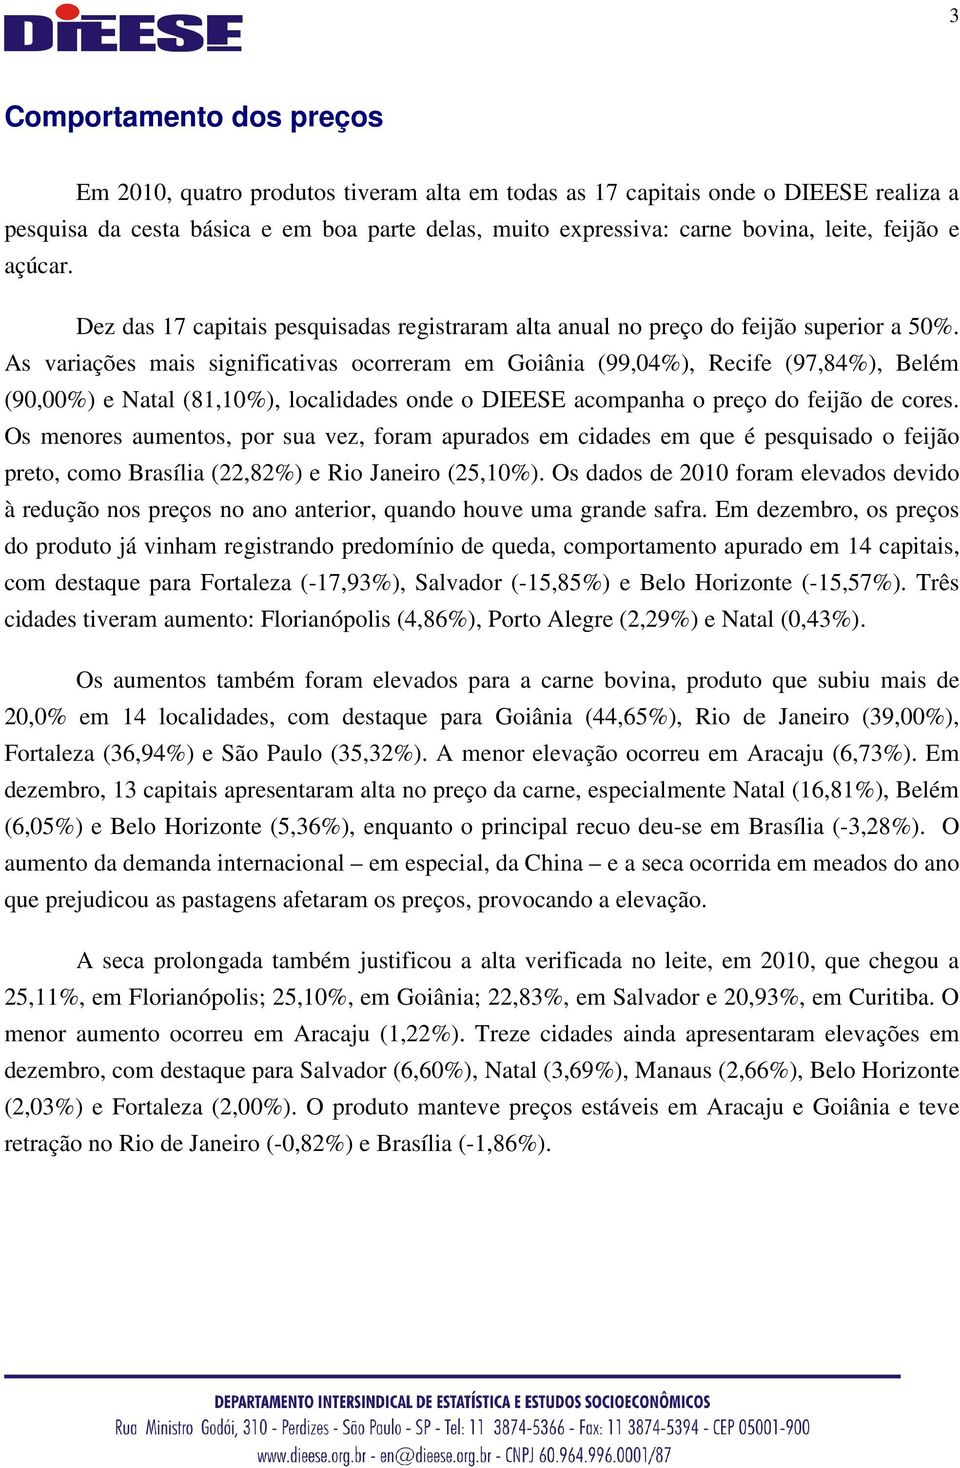 As variações mais significativas ocorreram em Goiânia (99,04%), Recife (97,84%), Belém (90,00%) e Natal (81,10%), localidades onde o DIEESE acompanha o preço do feijão de cores.